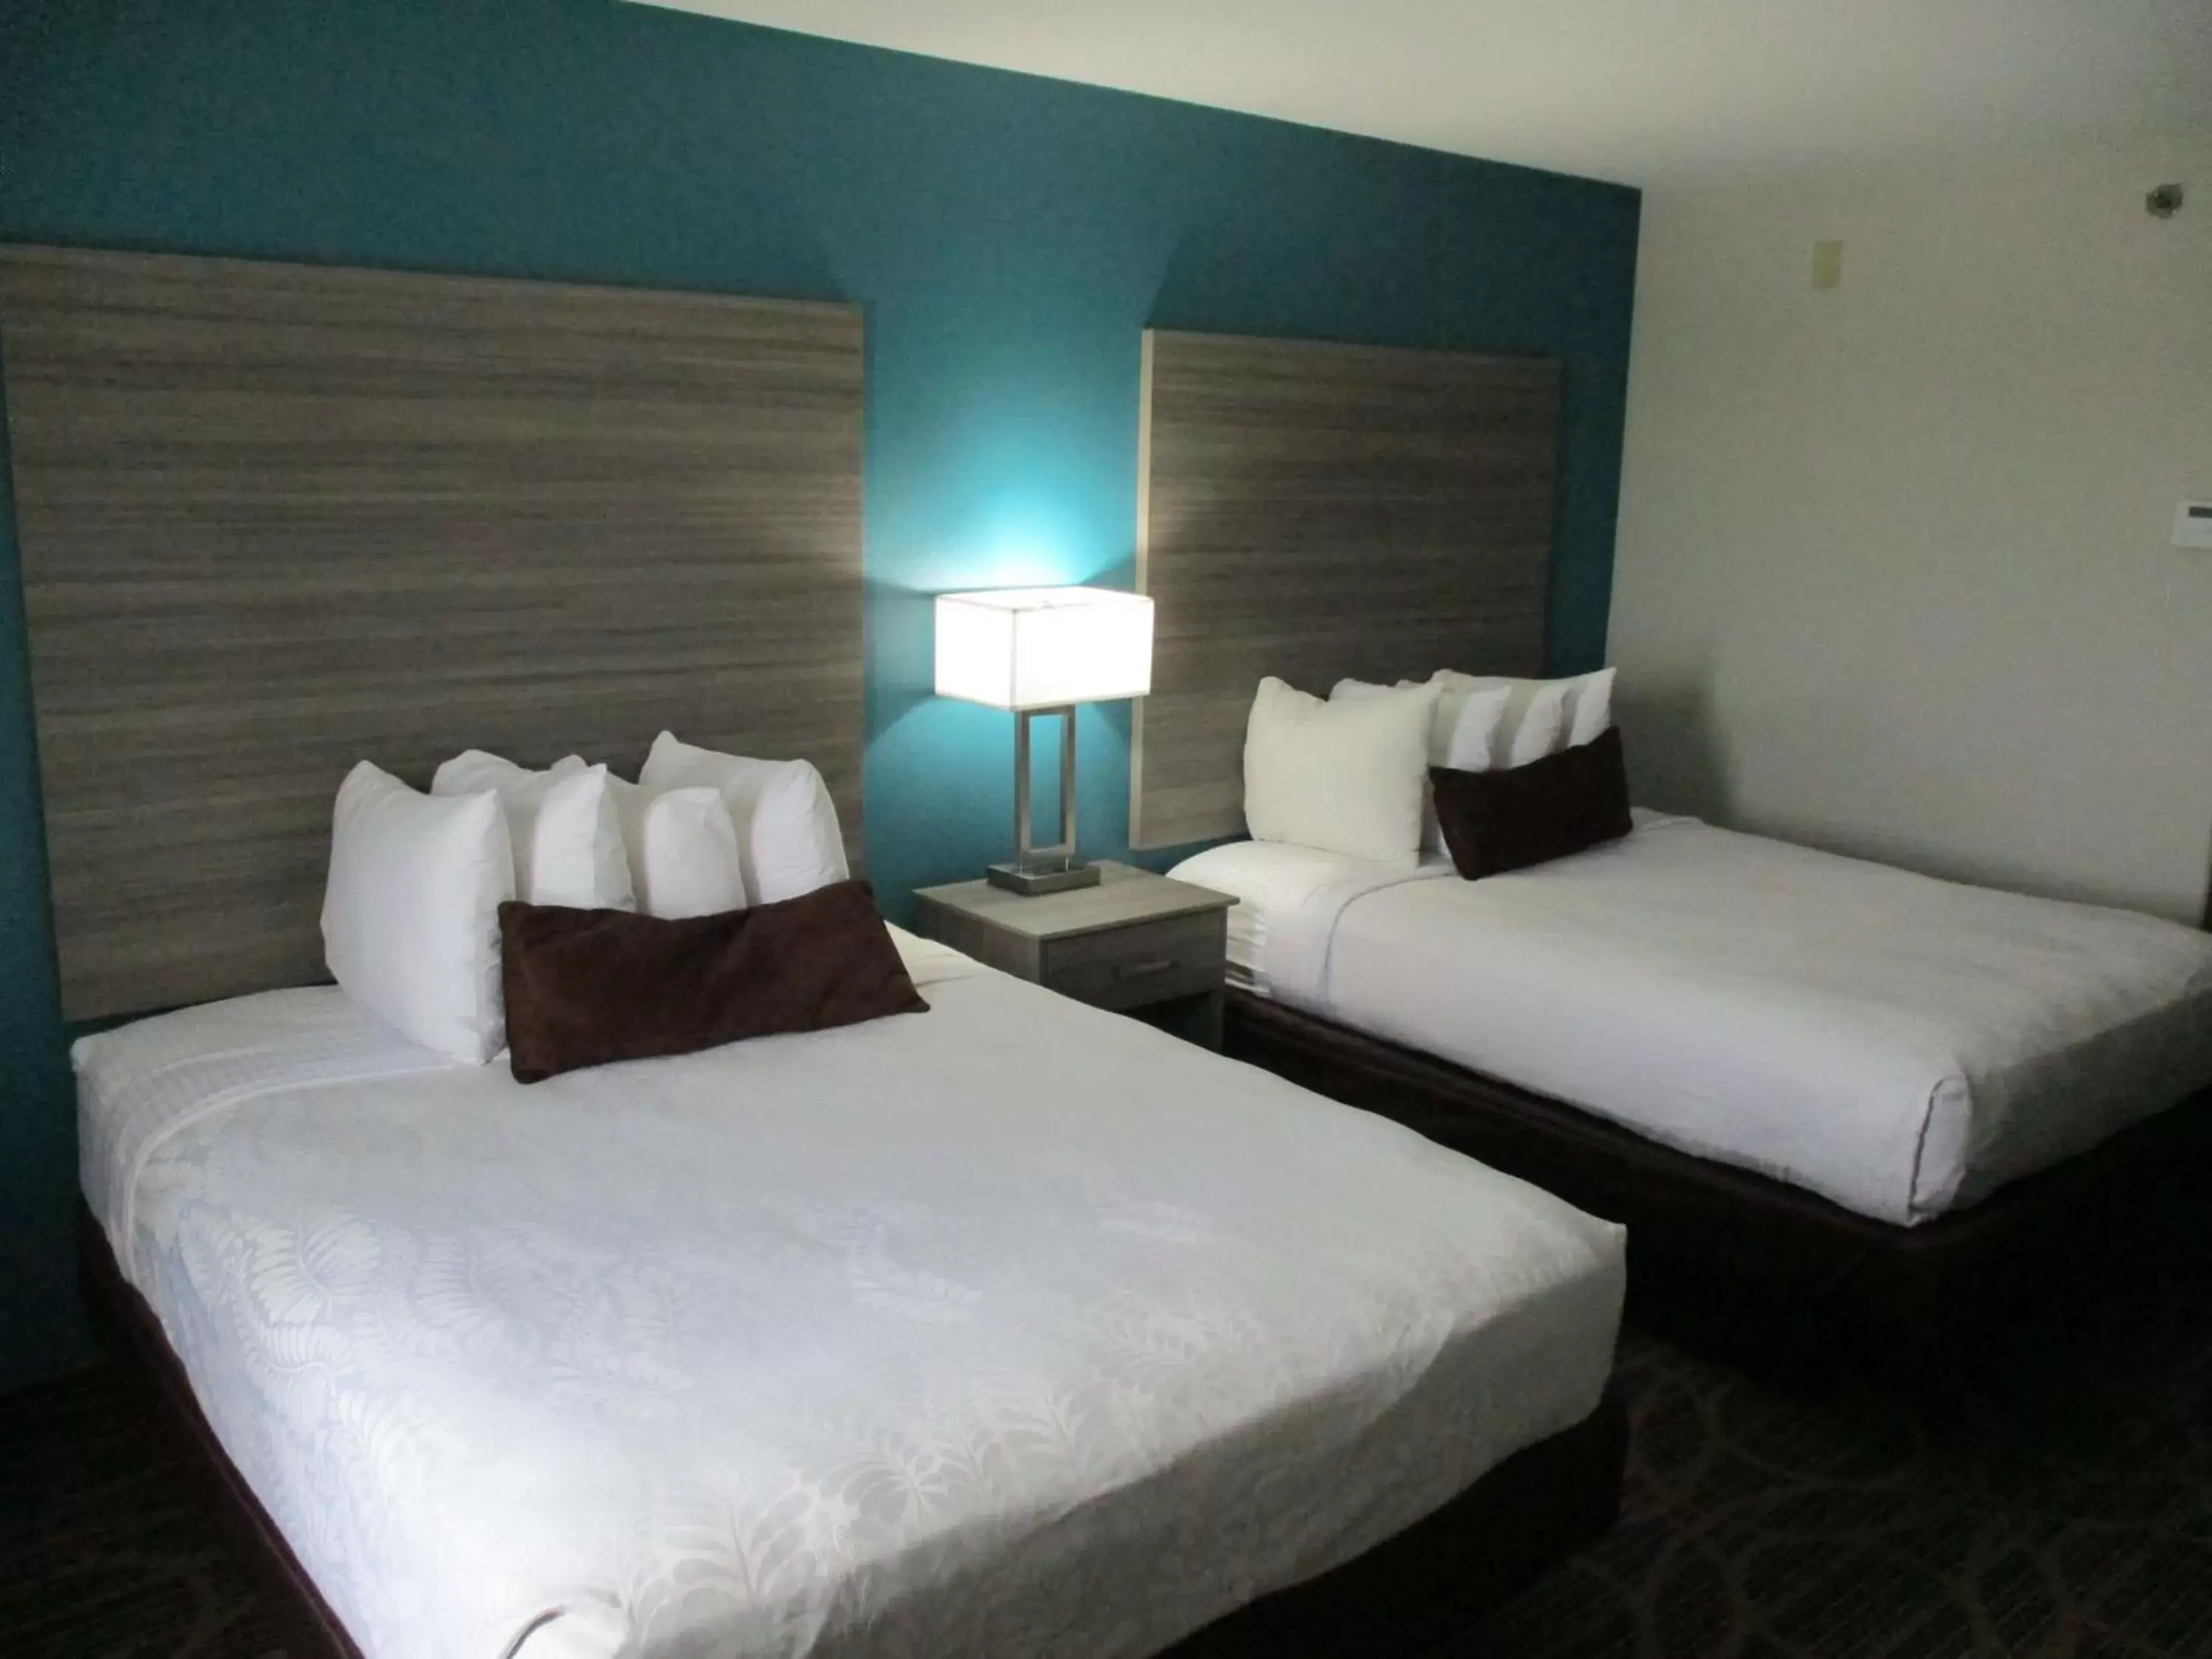 Bedroom, Bed in Best Western Presidential Hotel & Suites